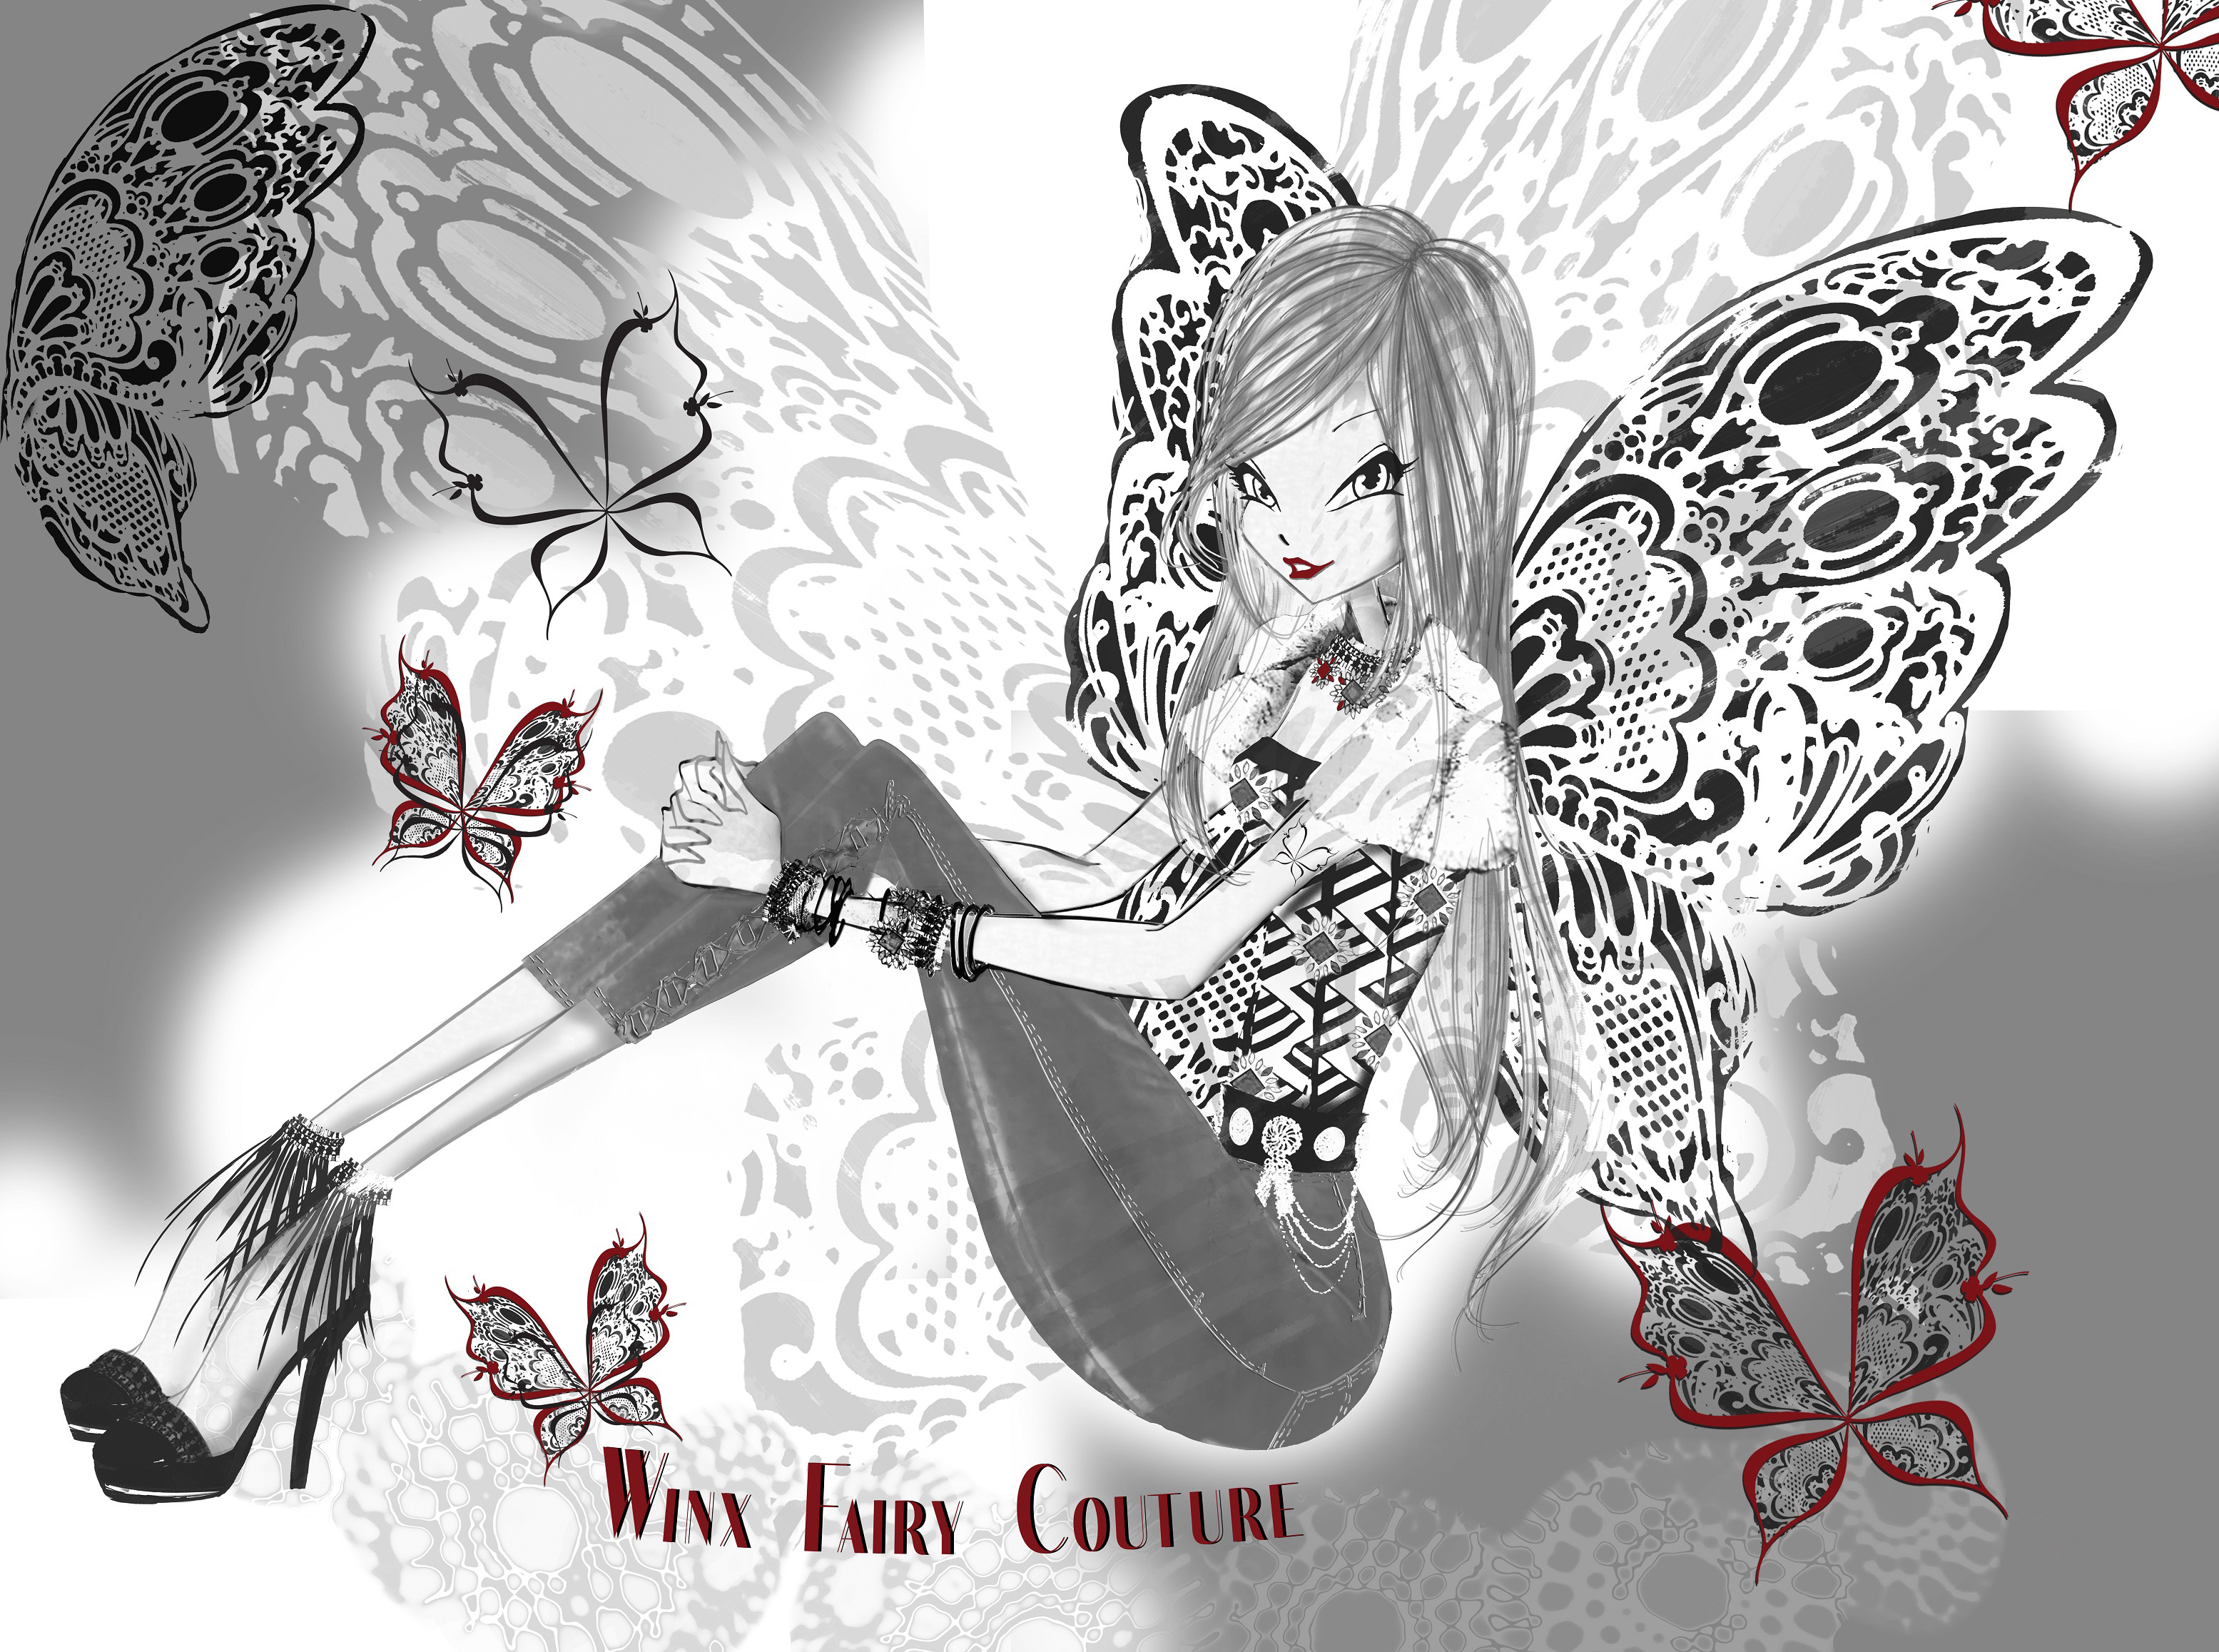 http://www.youloveit.ru/uploads/gallery/main/692/youloveit_ru_winx_fairy_couture07.jpg